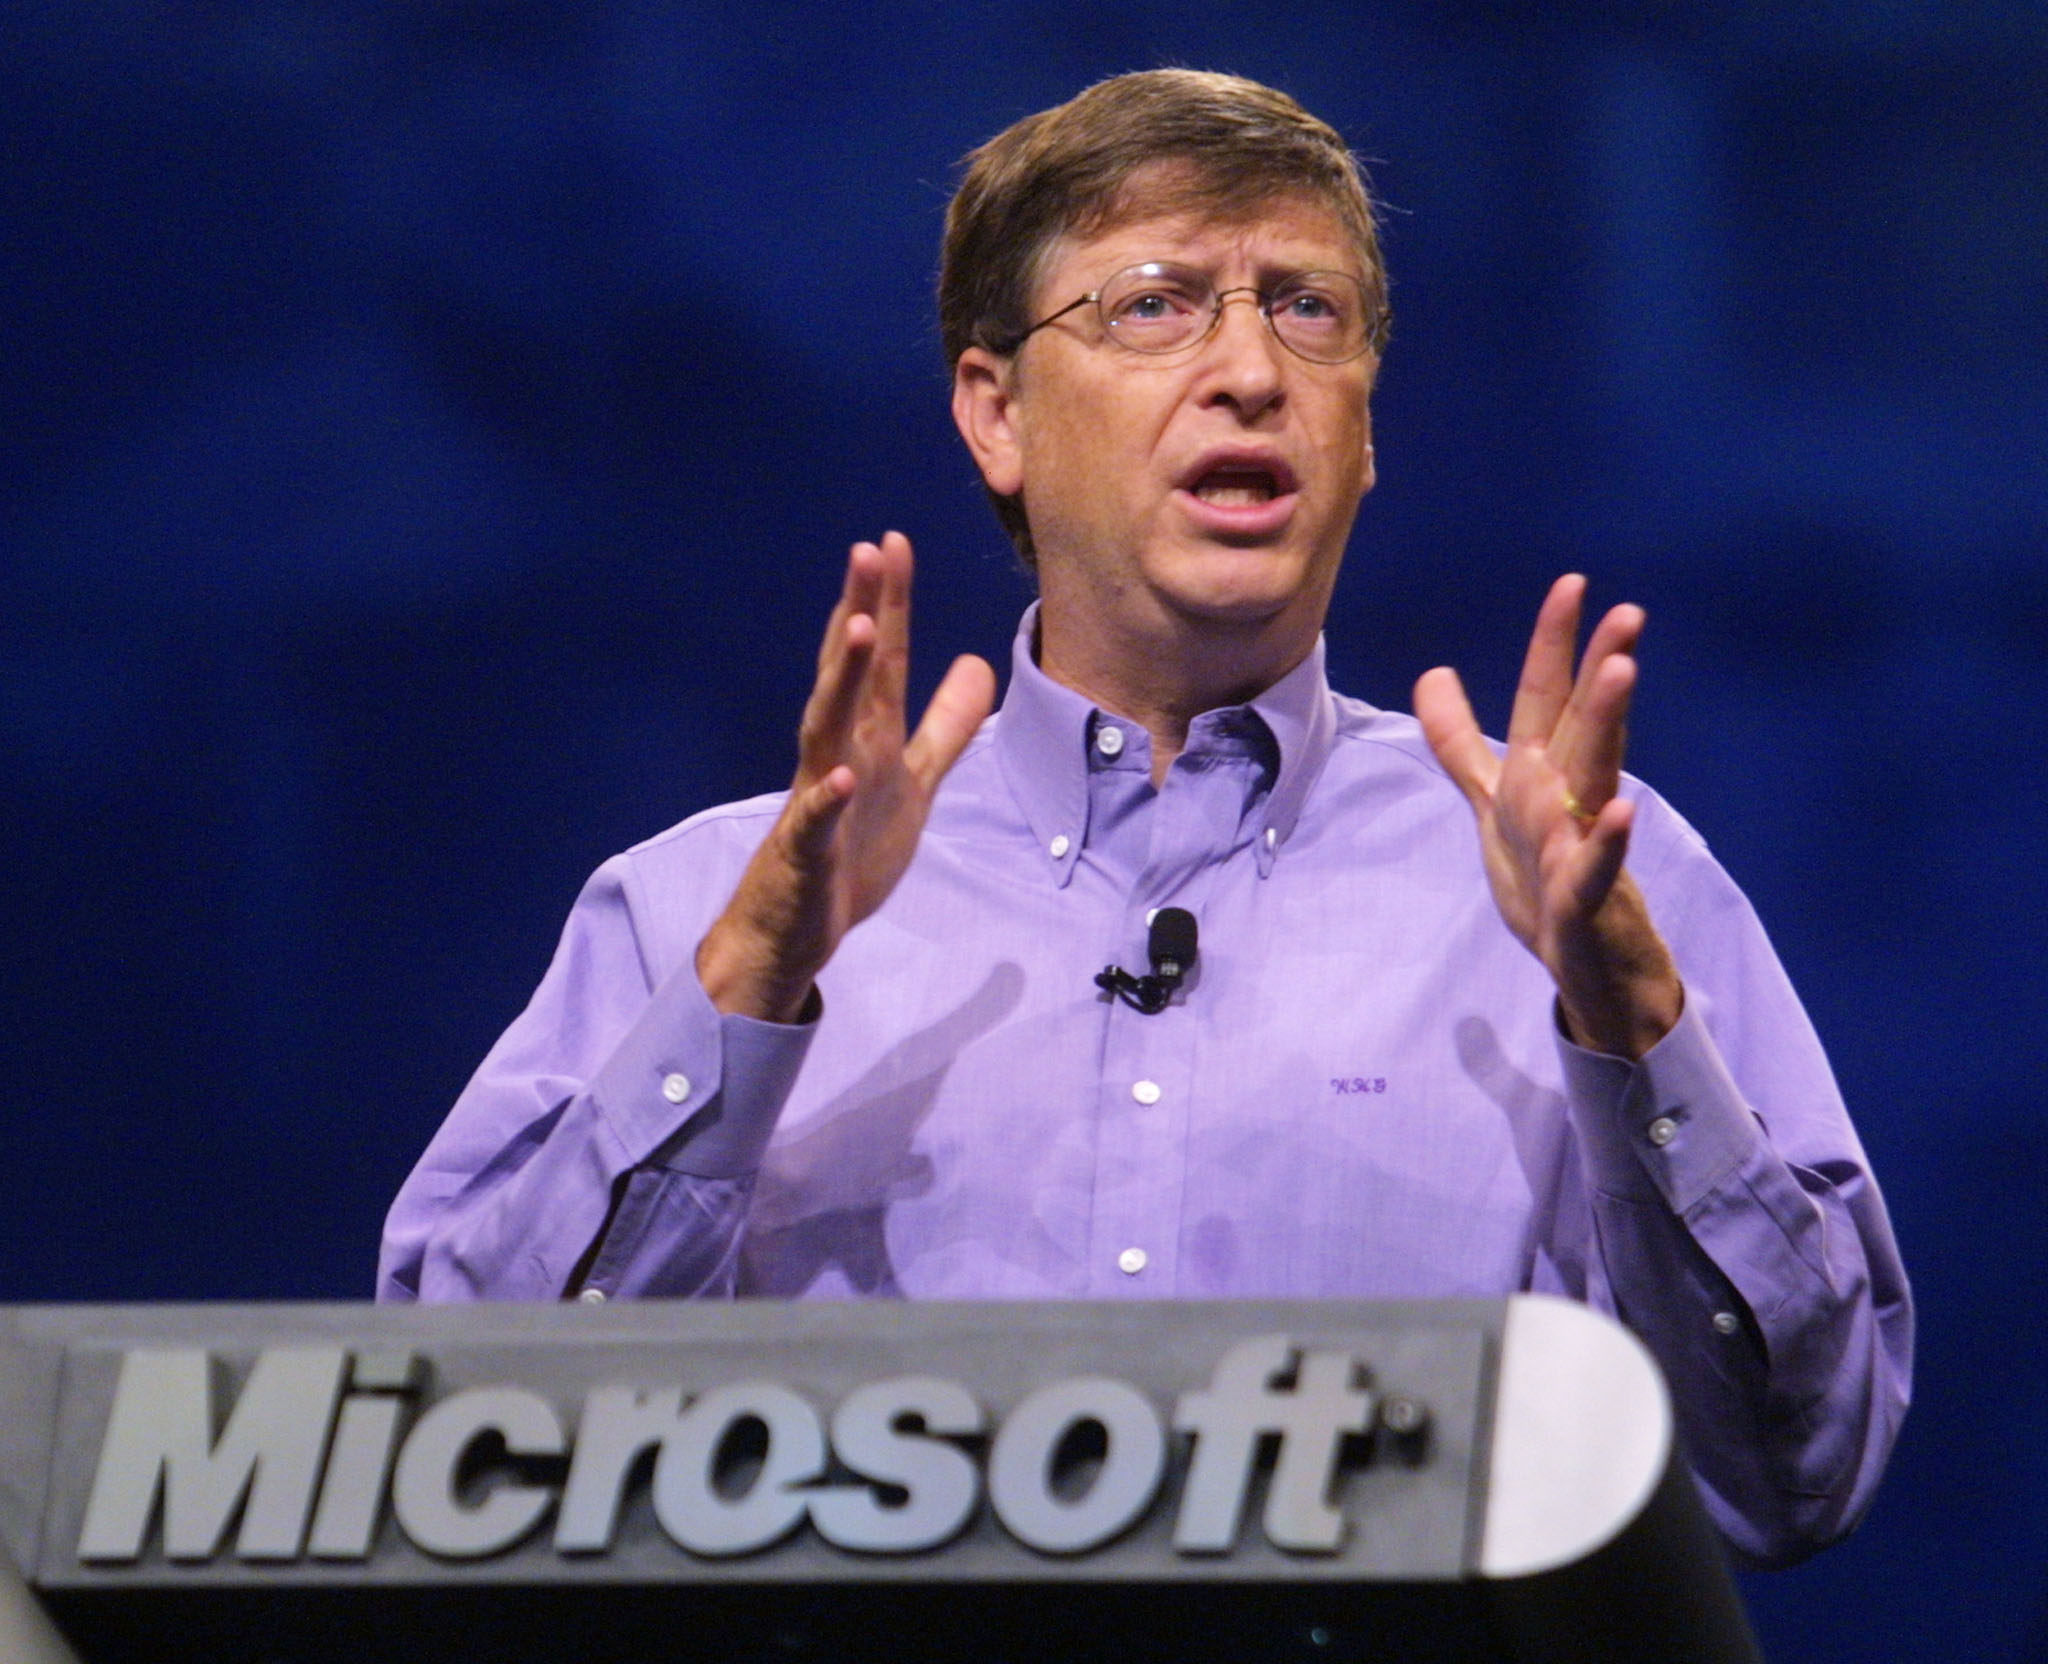 Bill Gates regains world’s richest man title